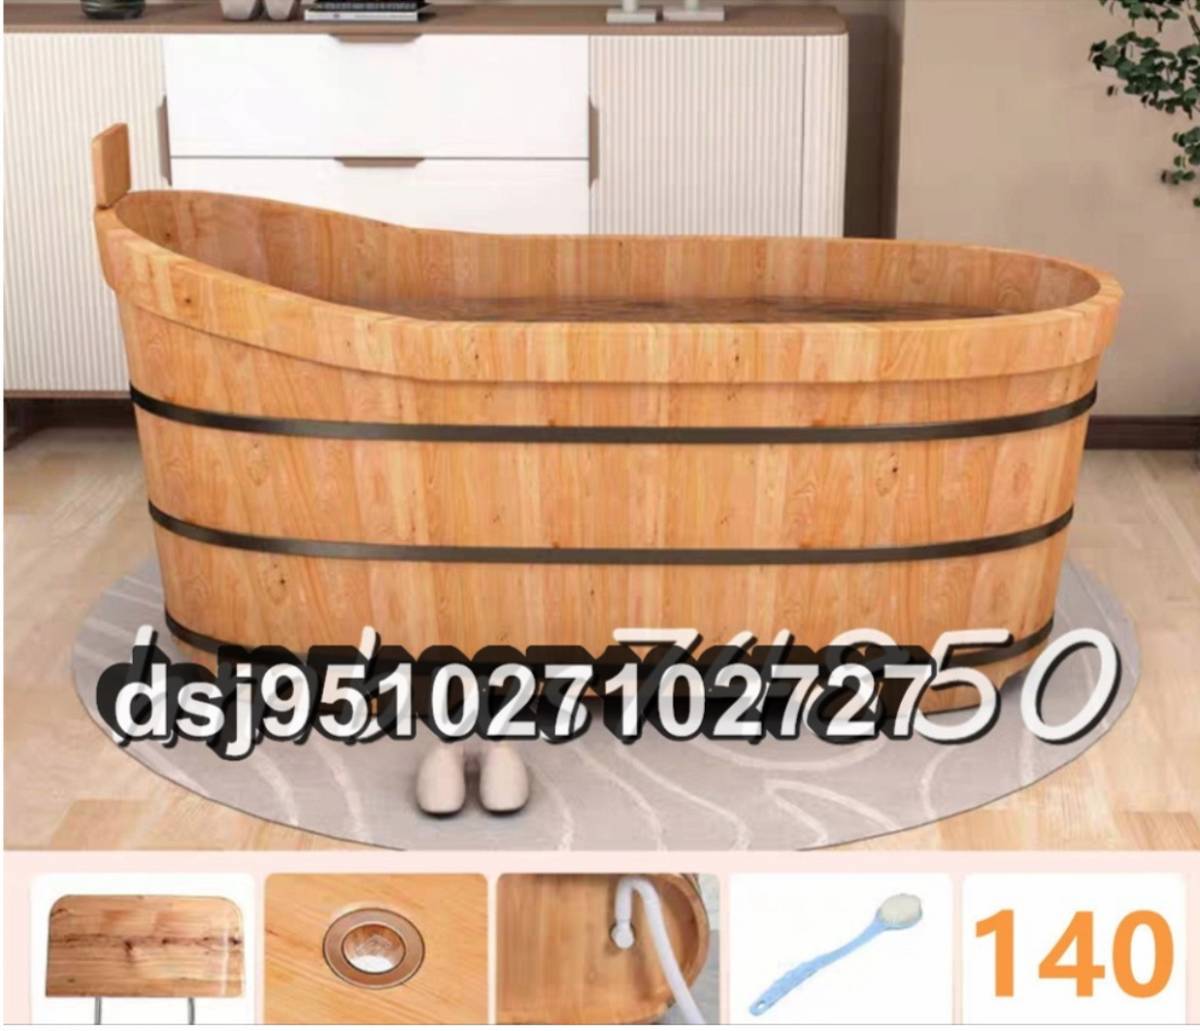 浴槽 お風呂 バスタブ 木製 浴室用 バケツ バスタブ 高品質 浴槽 排水金具付き 140cm×73cm×63cm